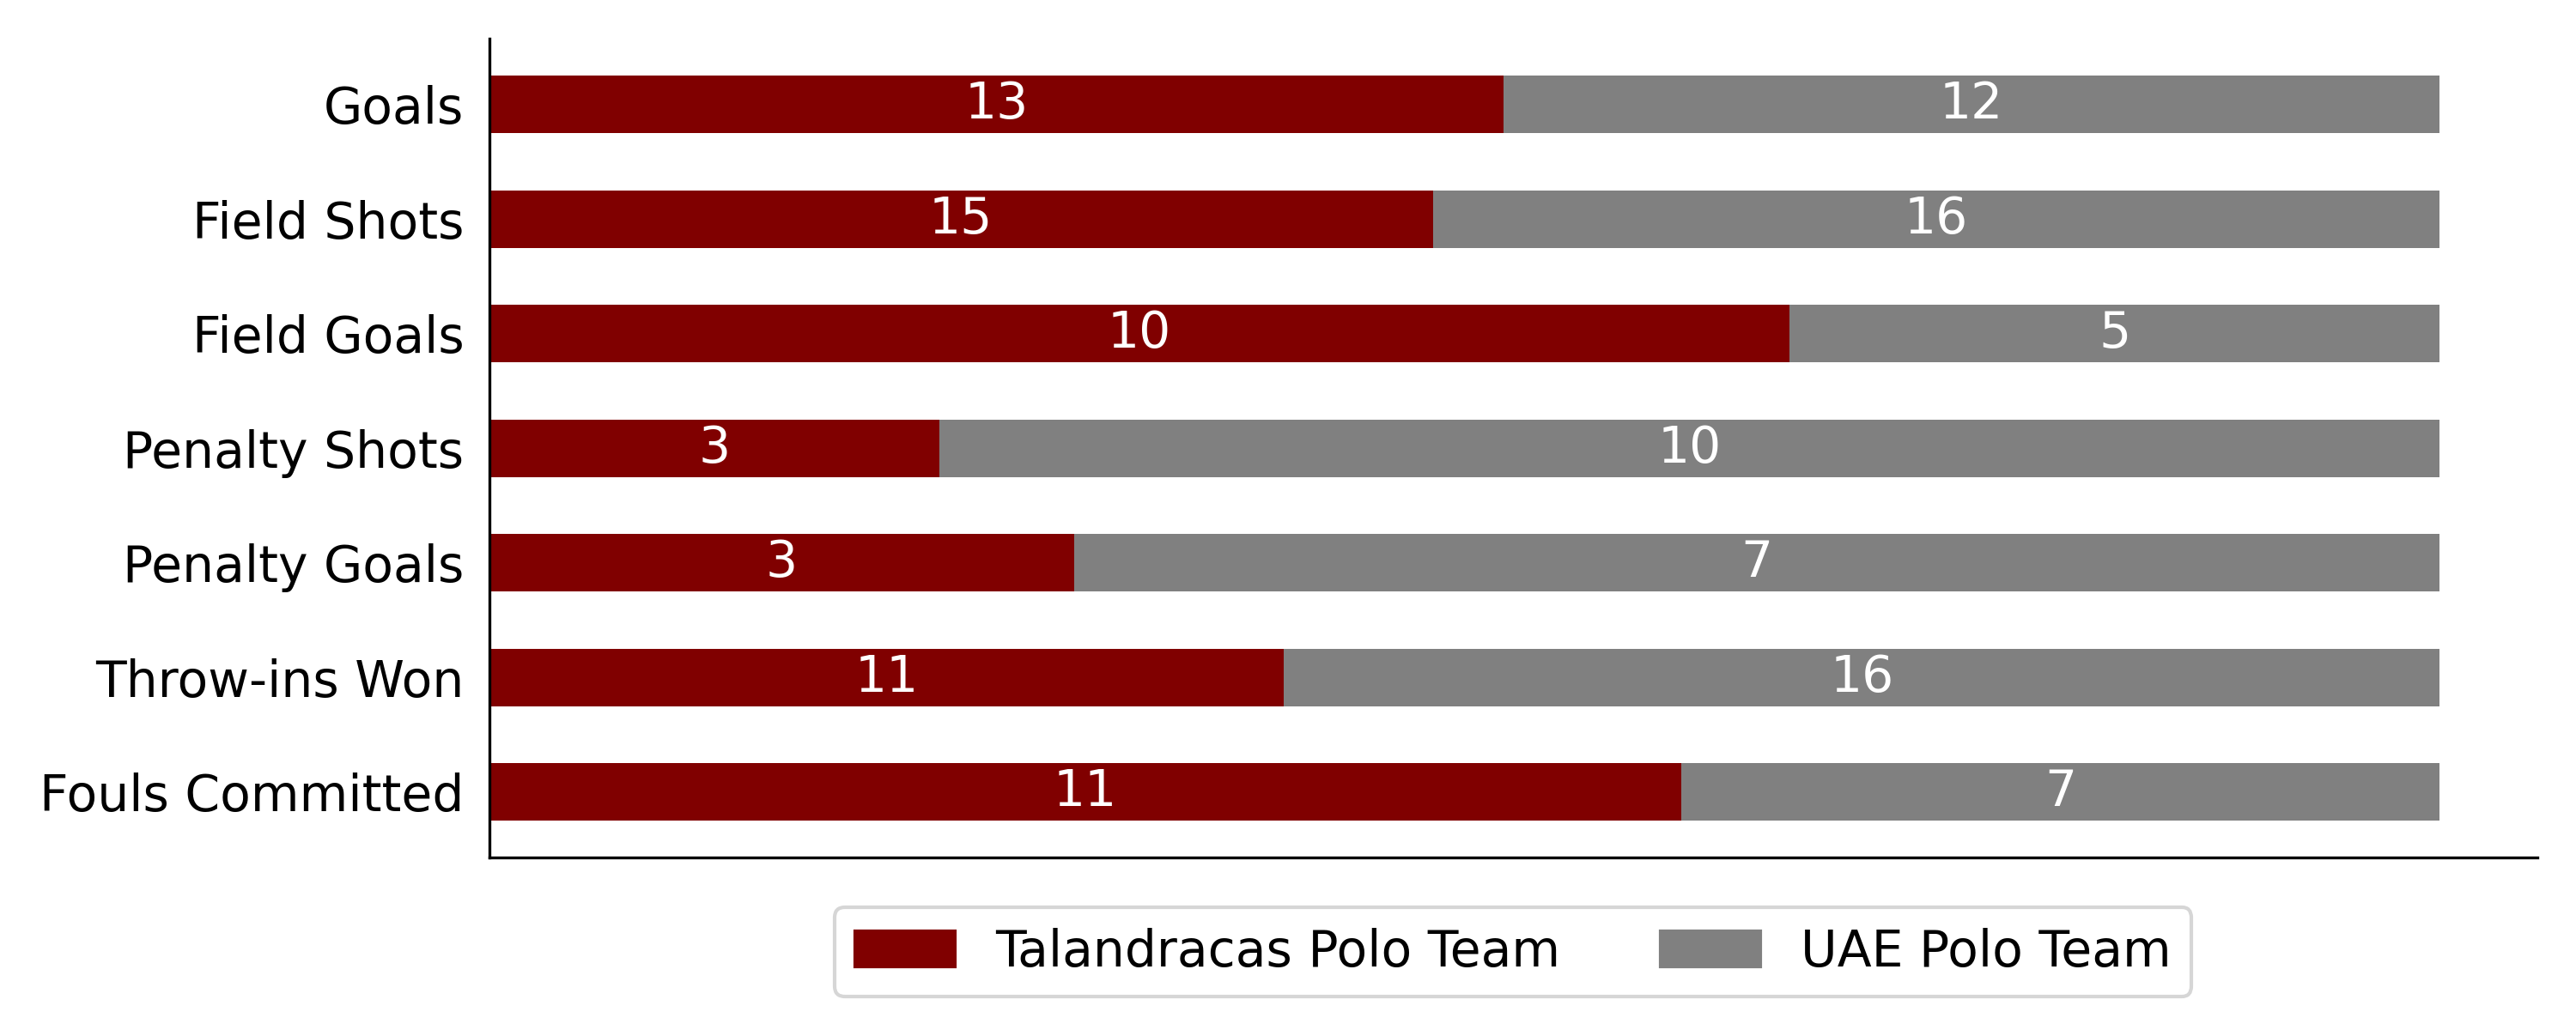 Talandracas Polo Team6